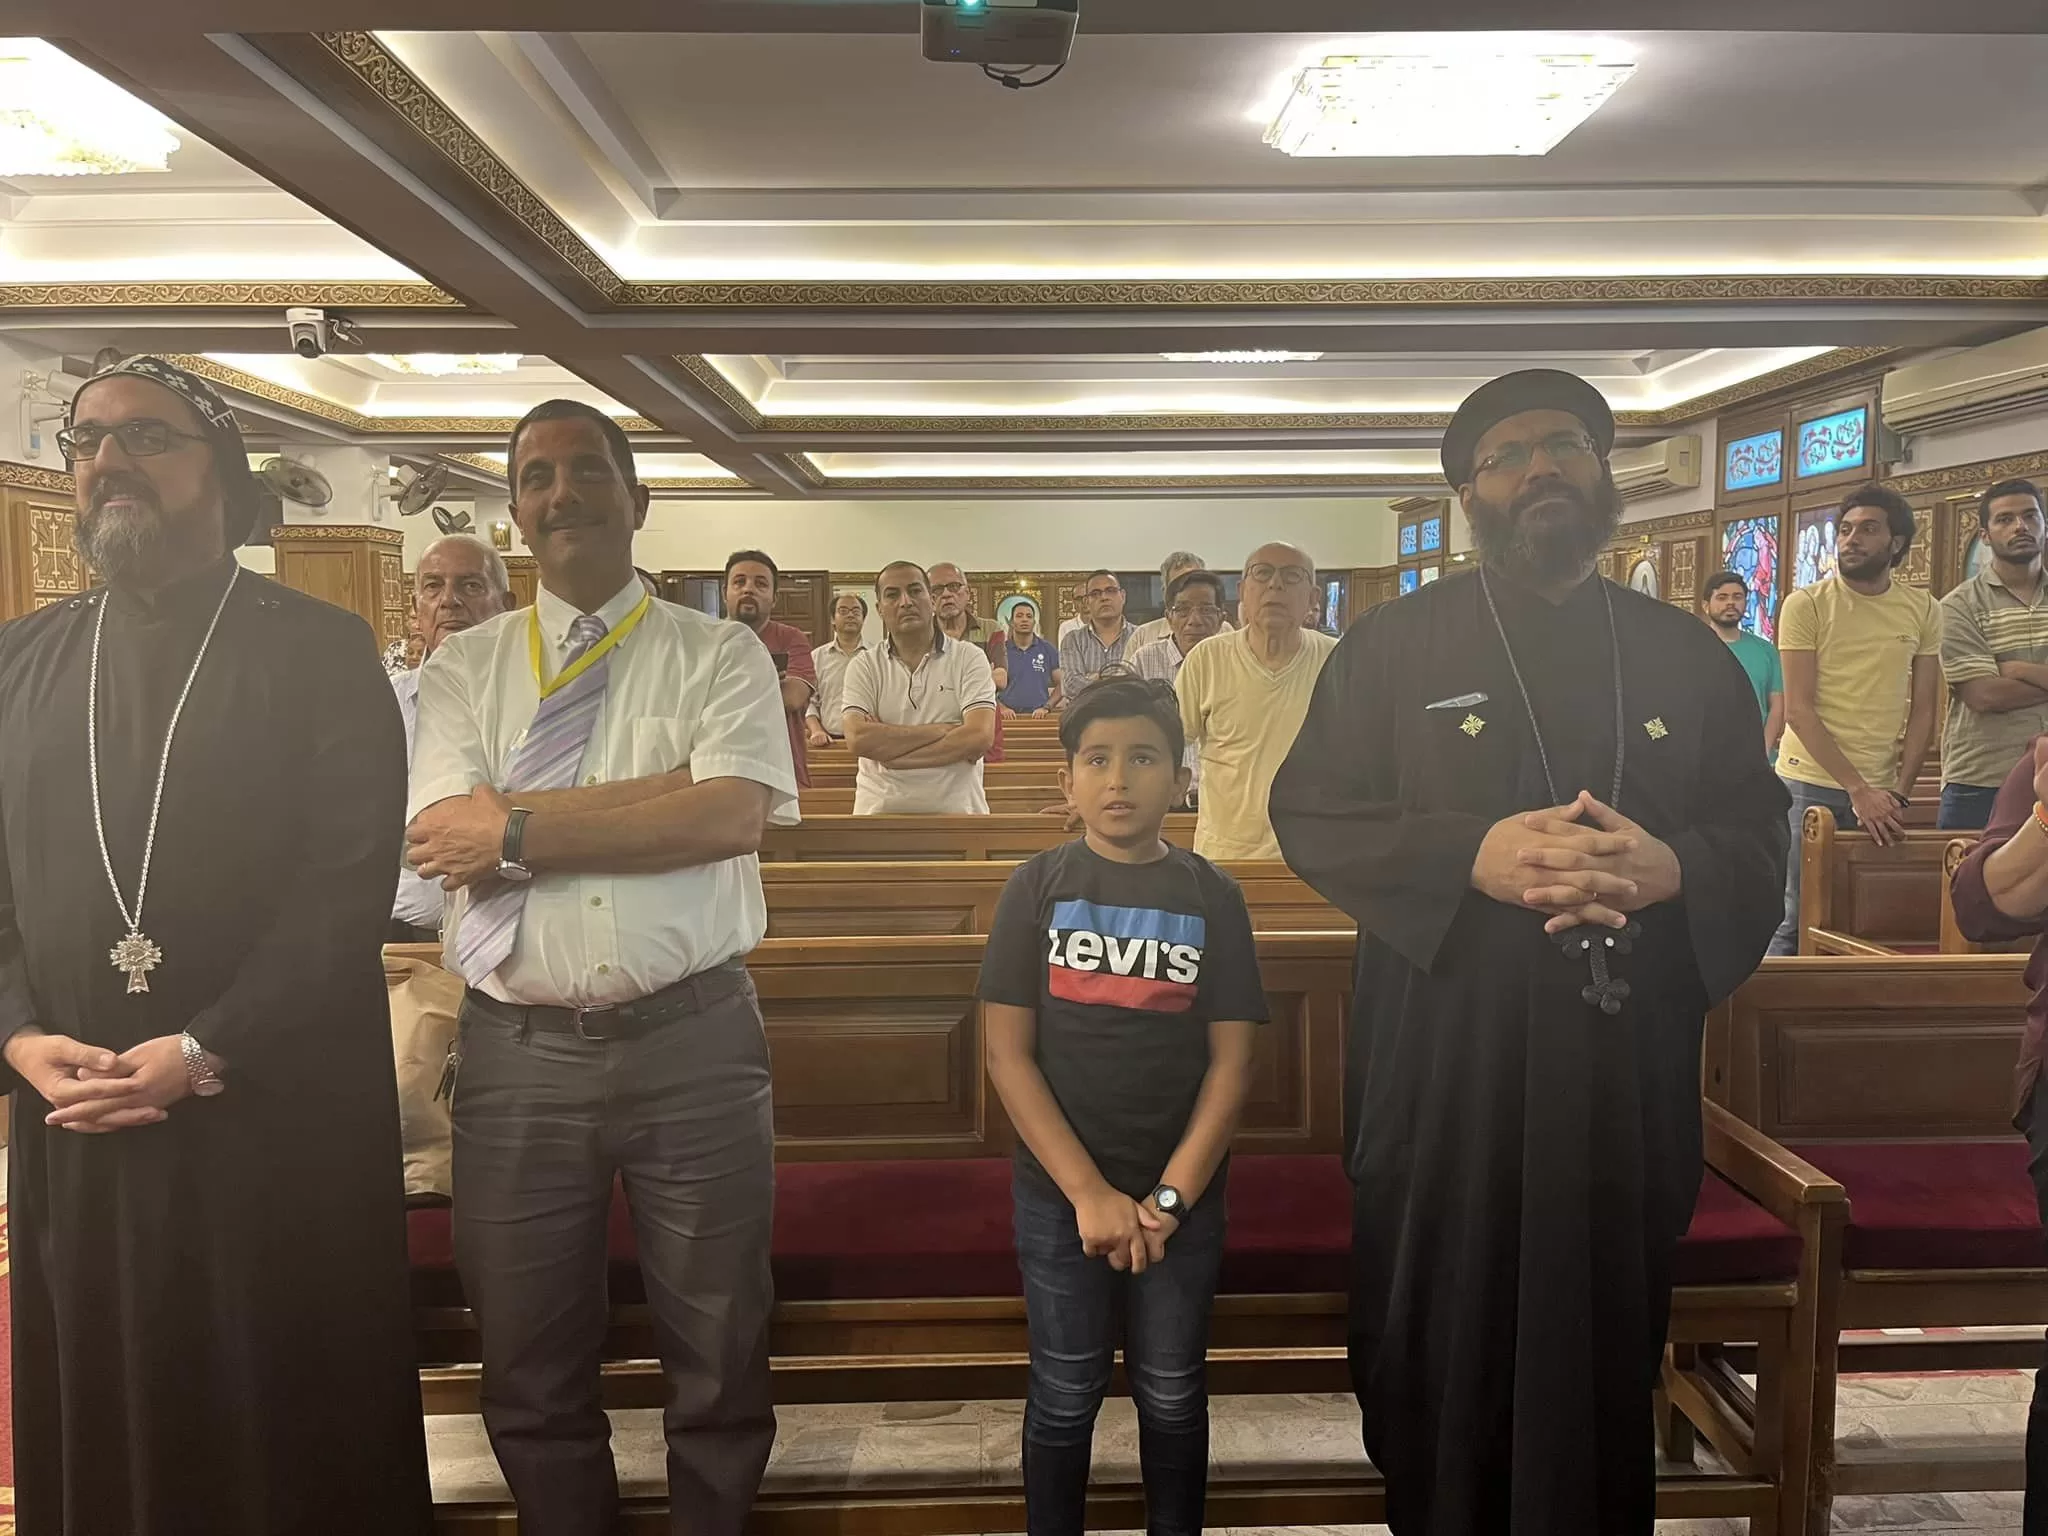 ربان الكنيسة السريانية الأرثوذكسية في مصر يشارك باليوم الخامس من نهضة السيدة العذراء في الزيتون